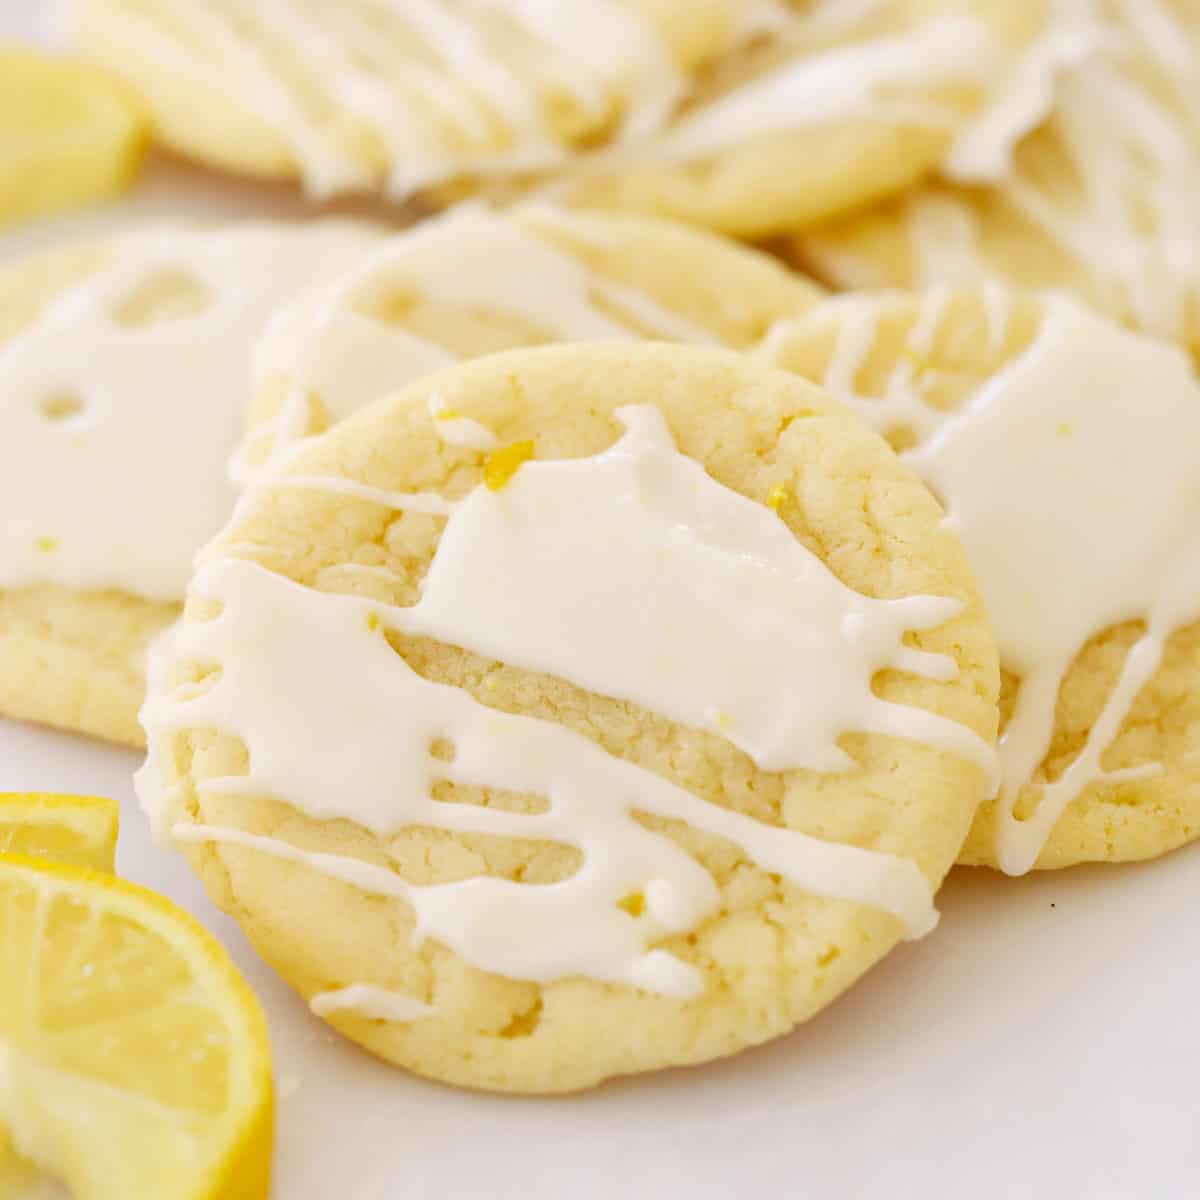 glazed lemon cookies on parchment paper